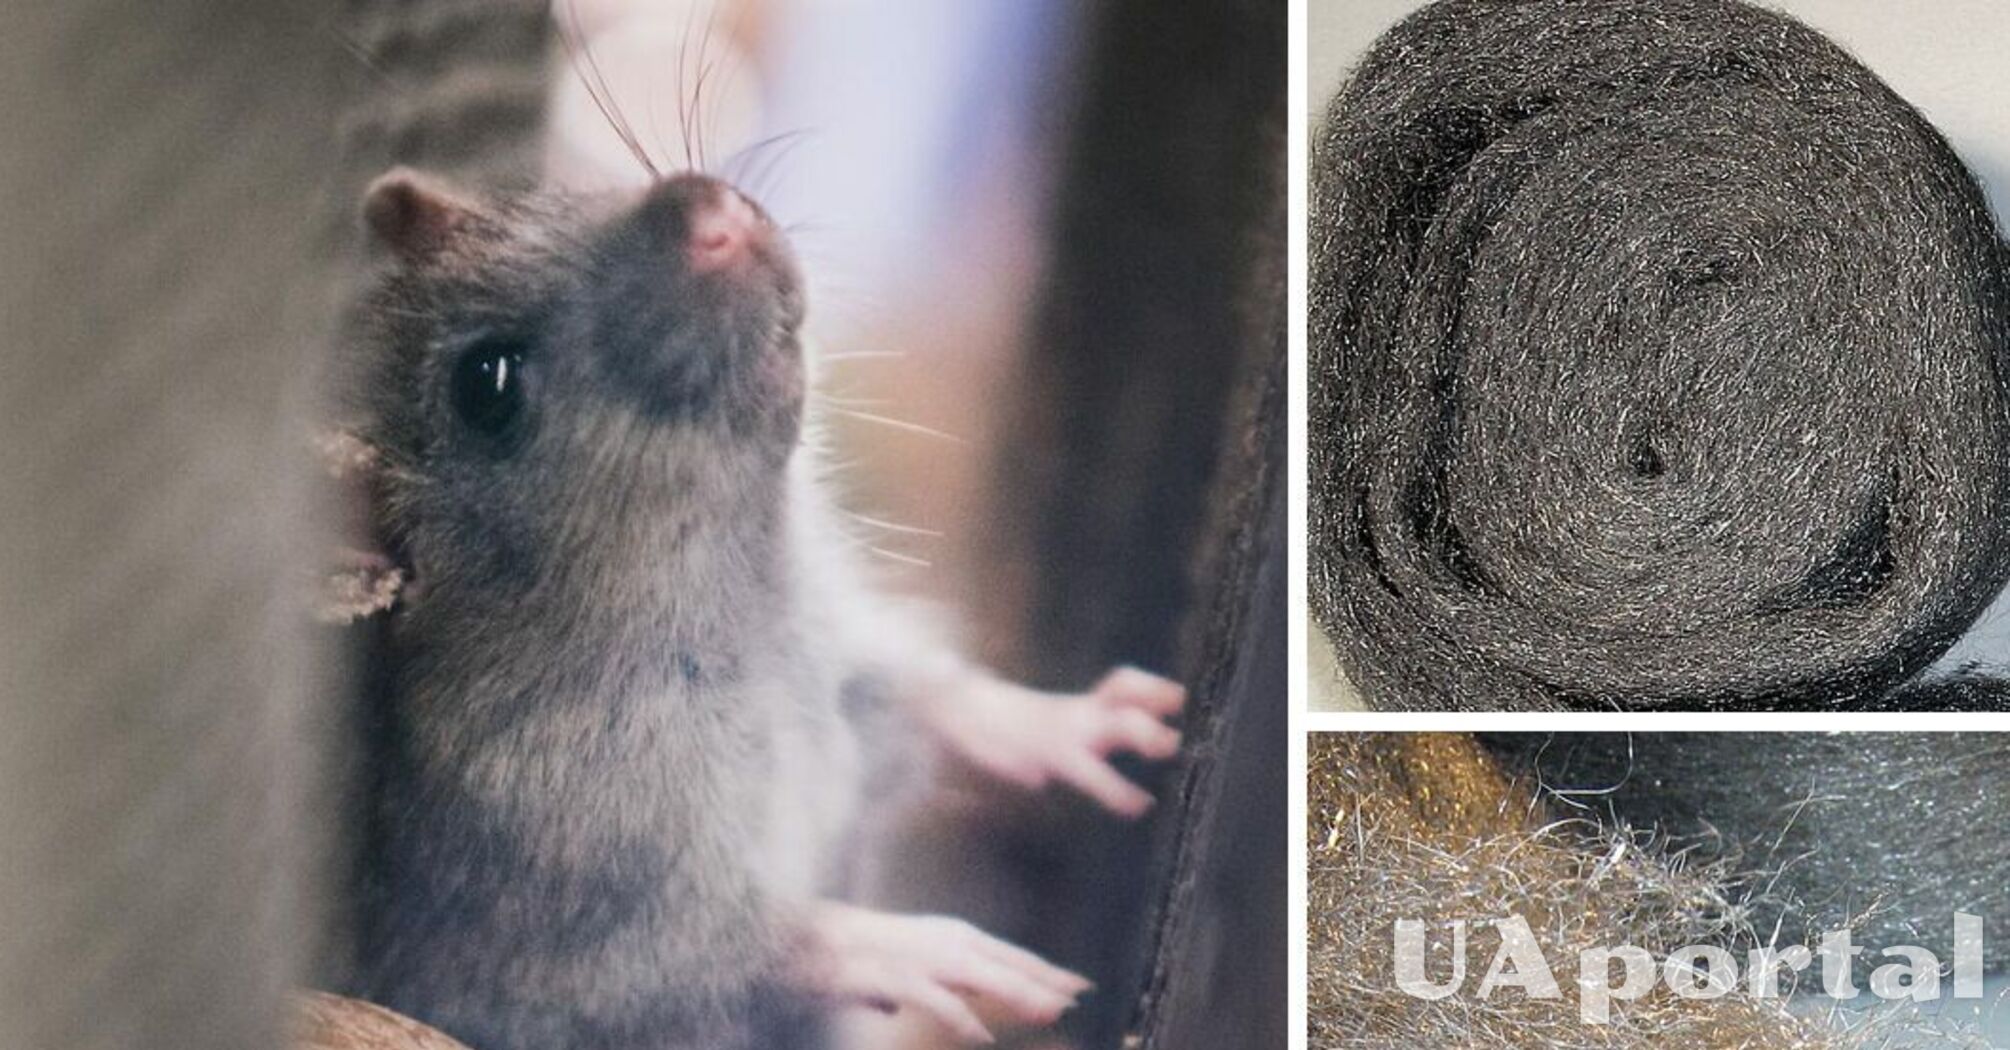 Эксперты подсказали дешевый способ избавиться от мышей, не убивая их